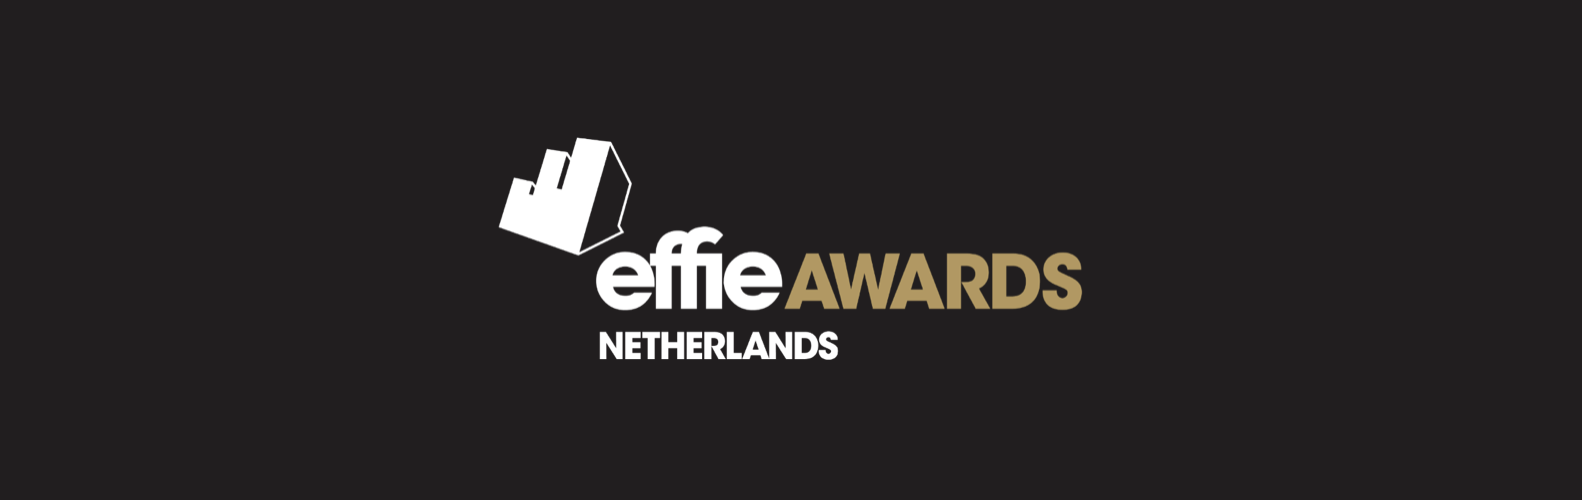 Effie Awards zoekt juryleden met lef en kennis